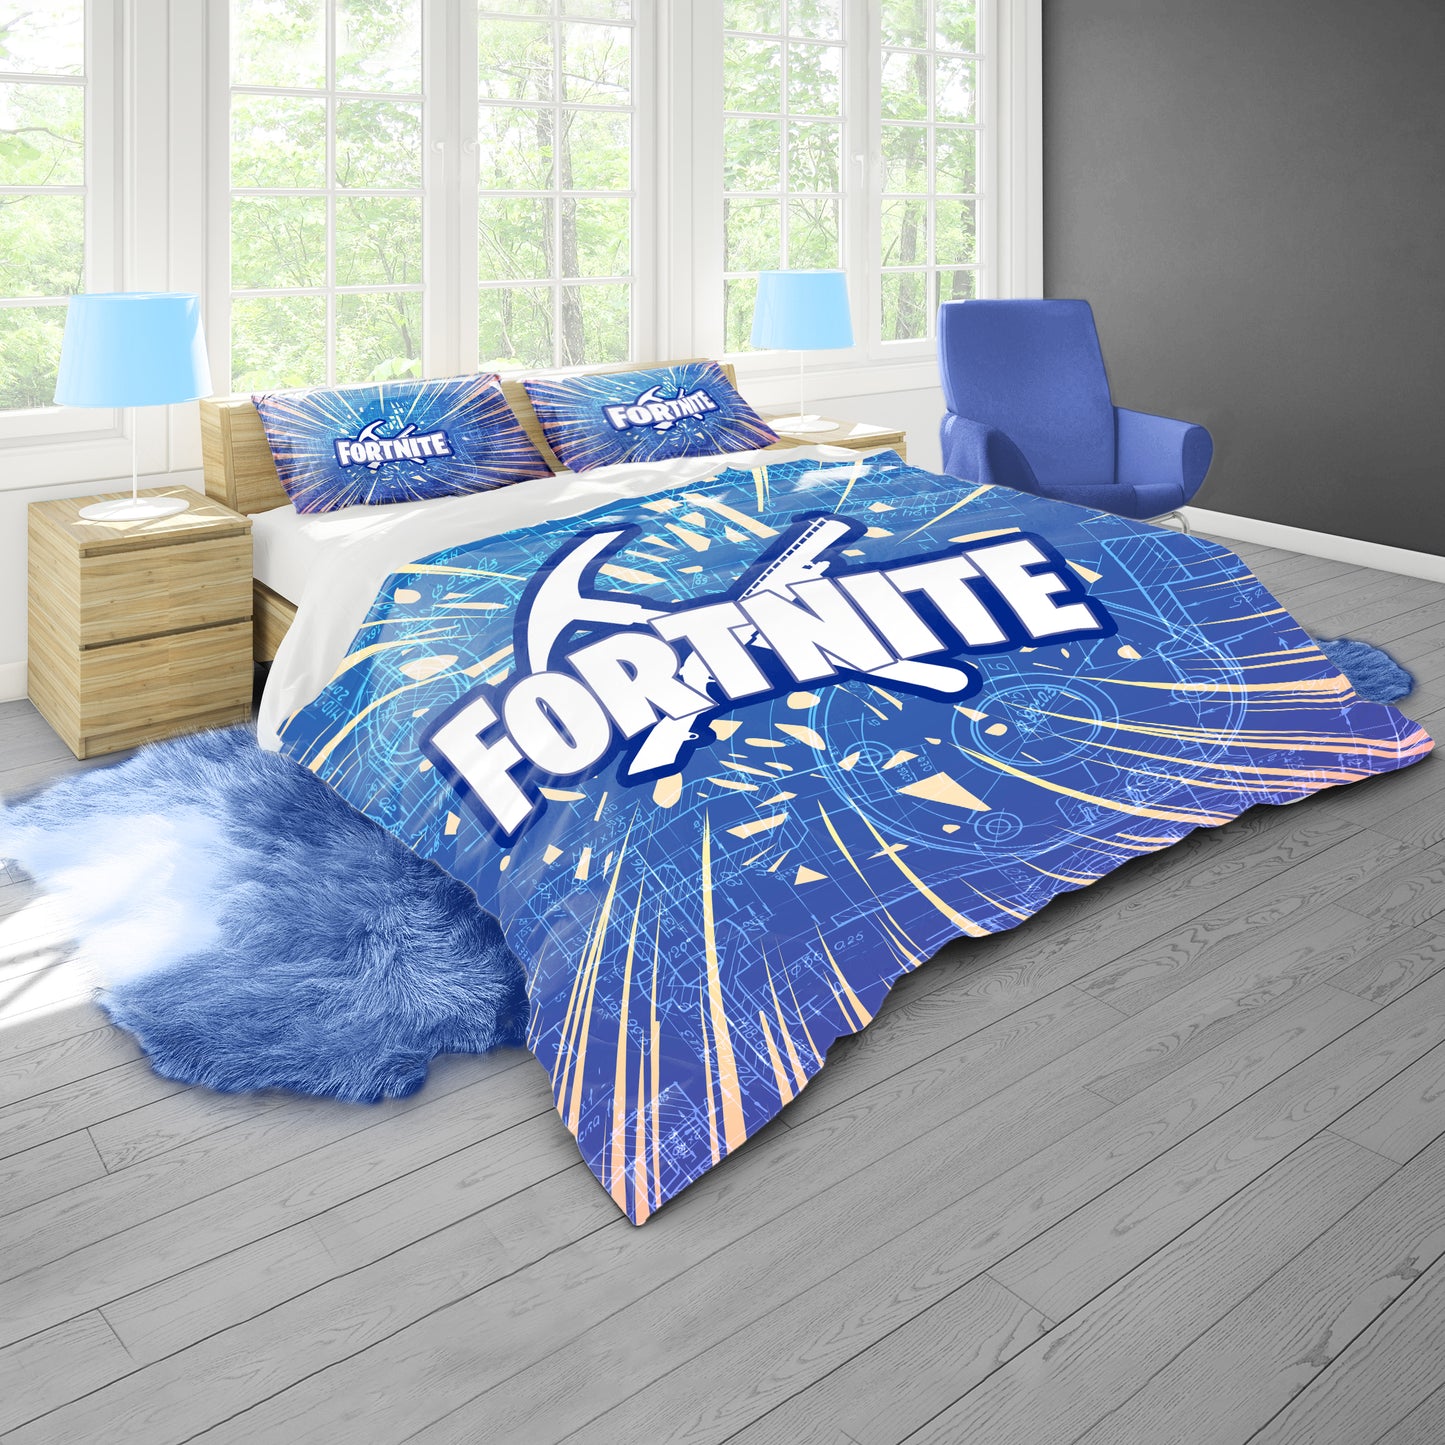 Fortnite Logo Duvet Cover Set